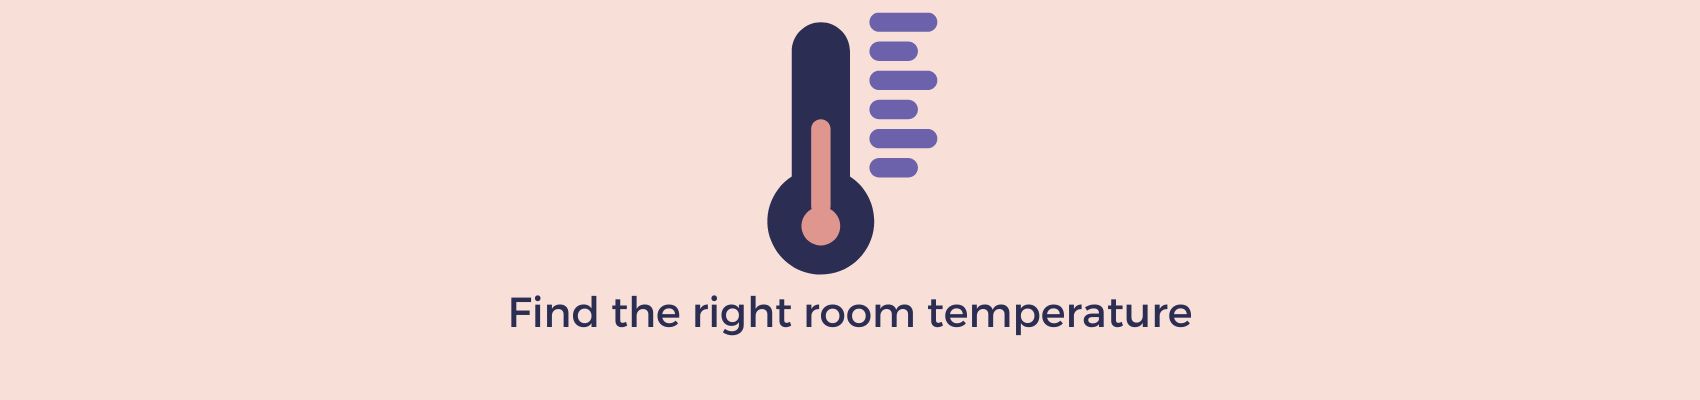 Room temperature